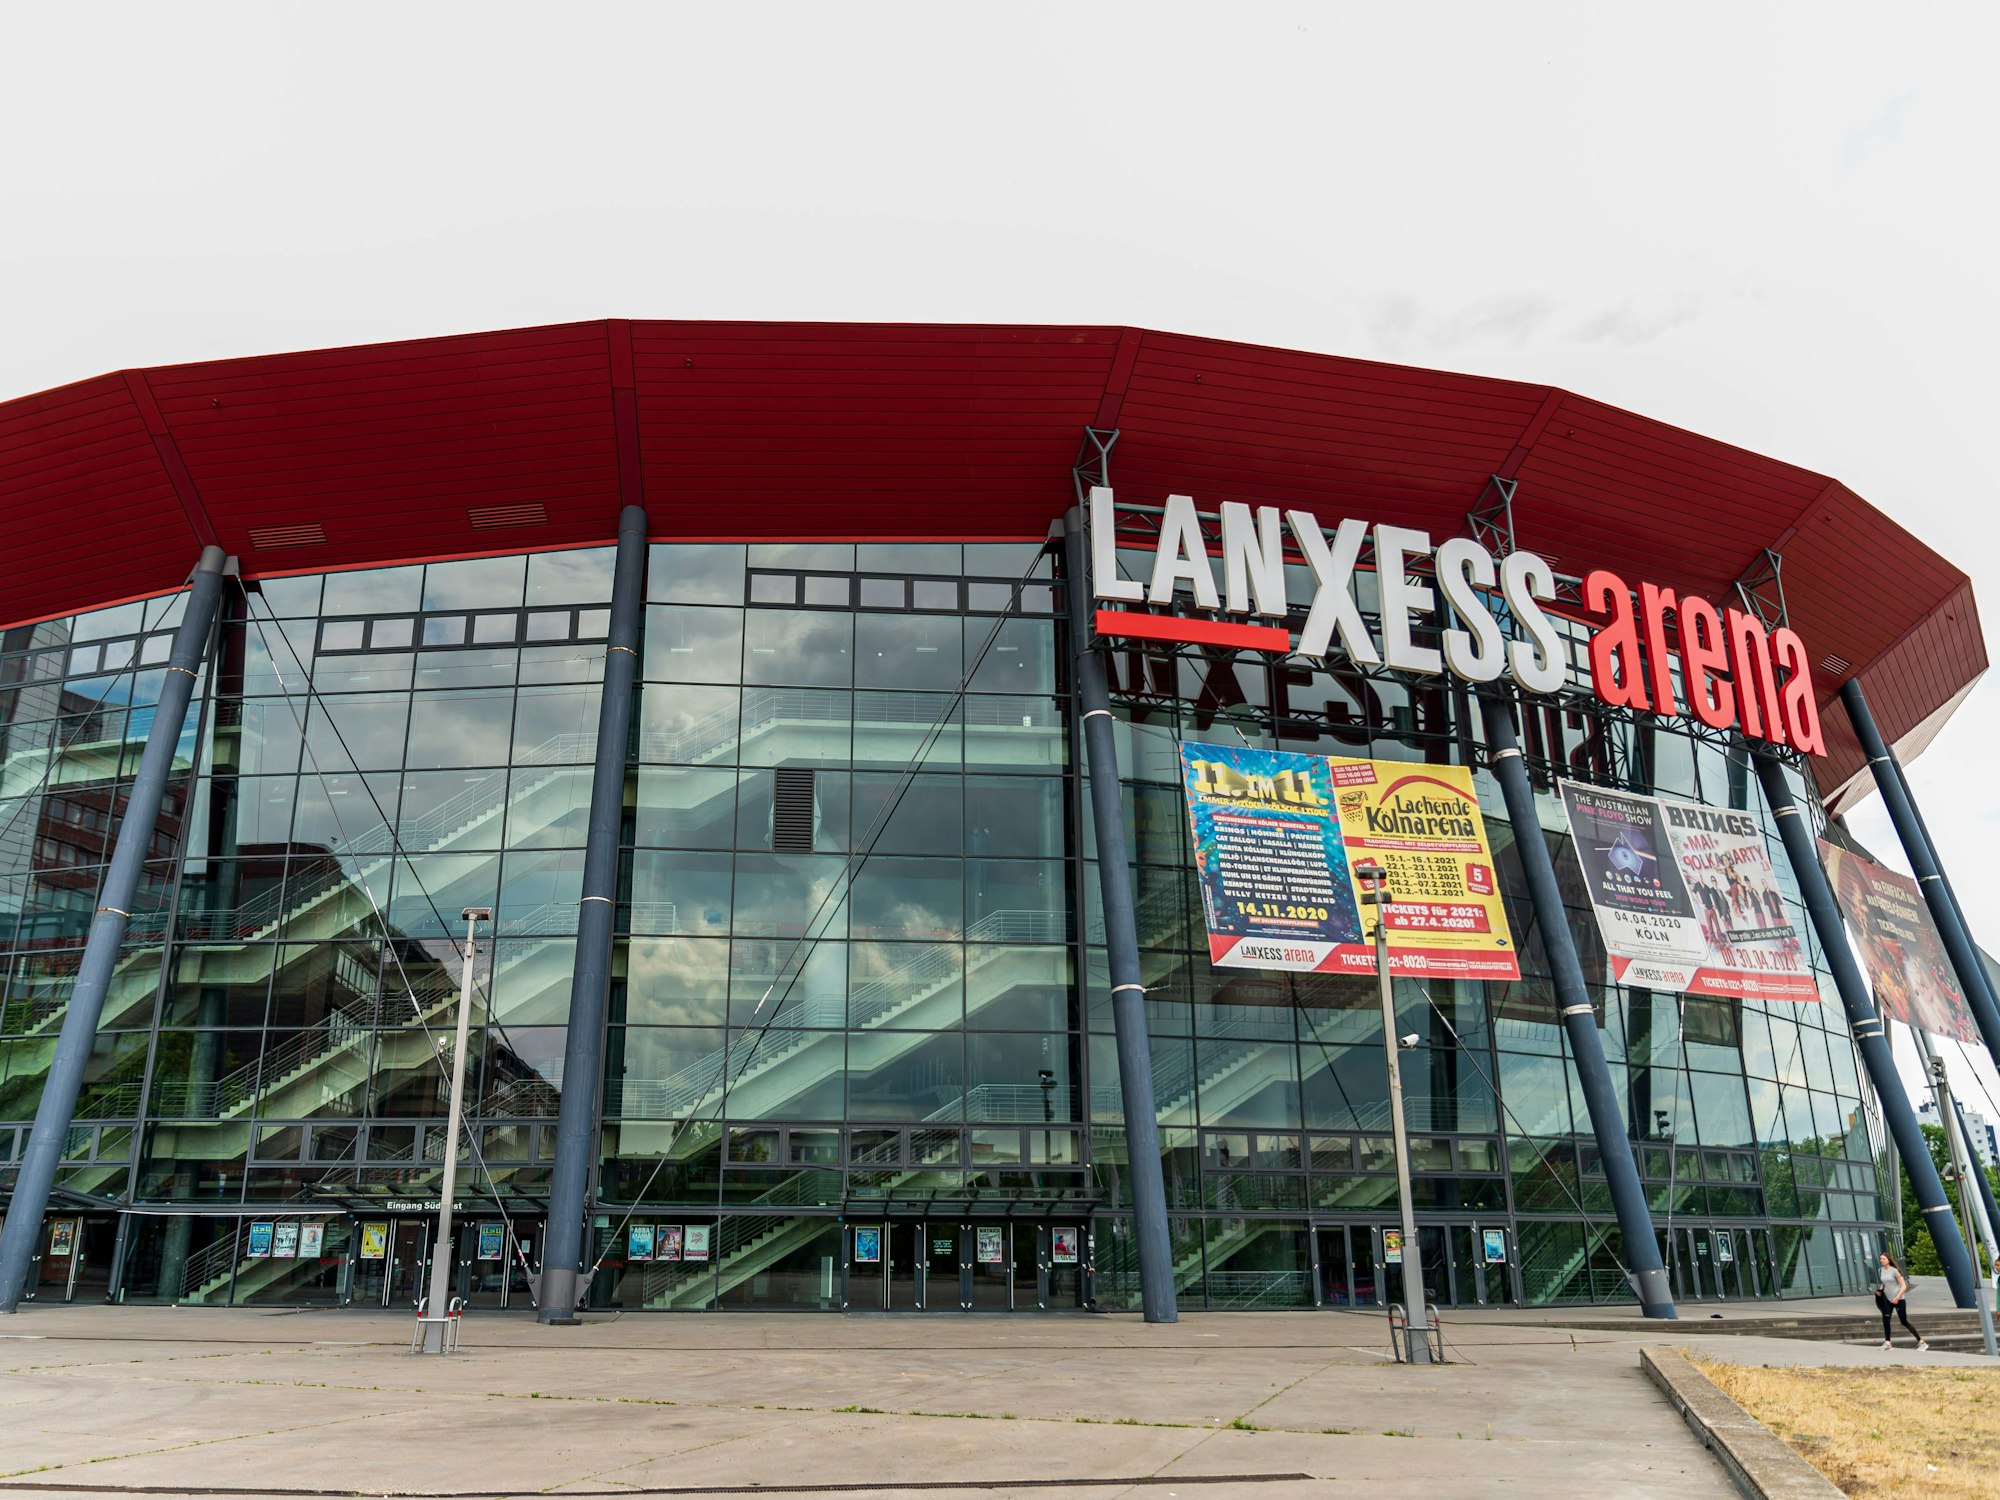 Die Lanxess-Arena in Köln von außen (2020).